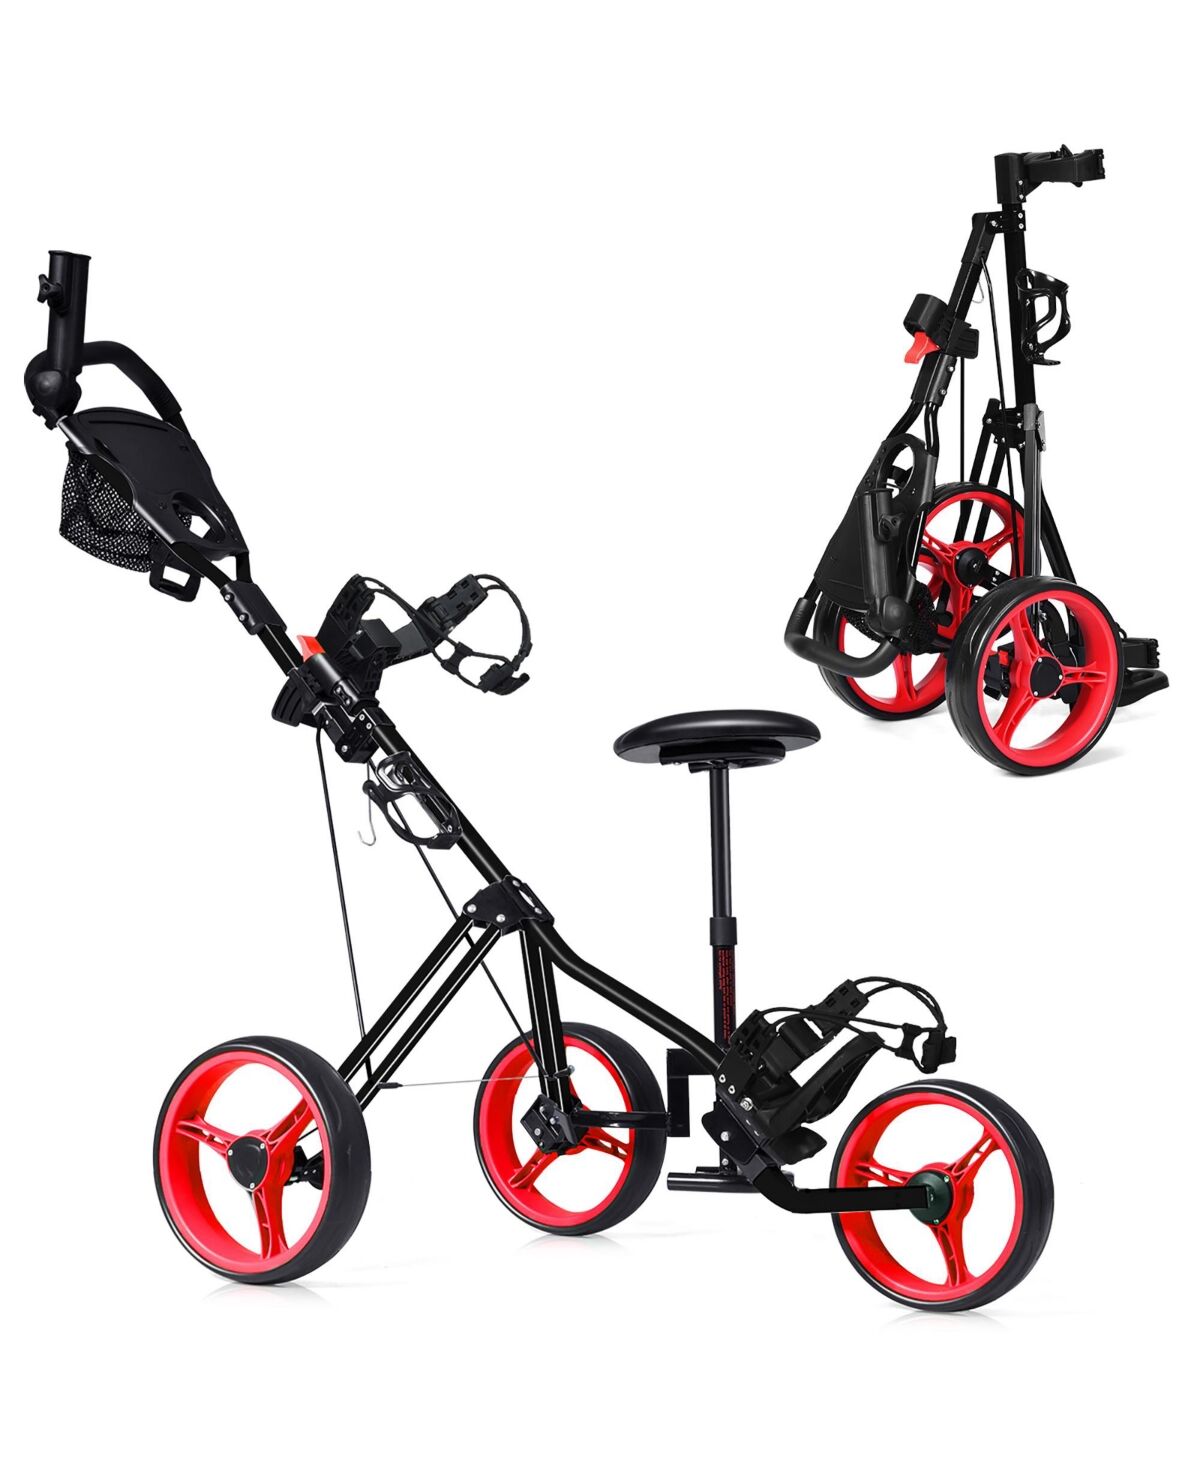 Costway Foldable 3 Wheel Push Pull Golf Club Cart Trolley - Red